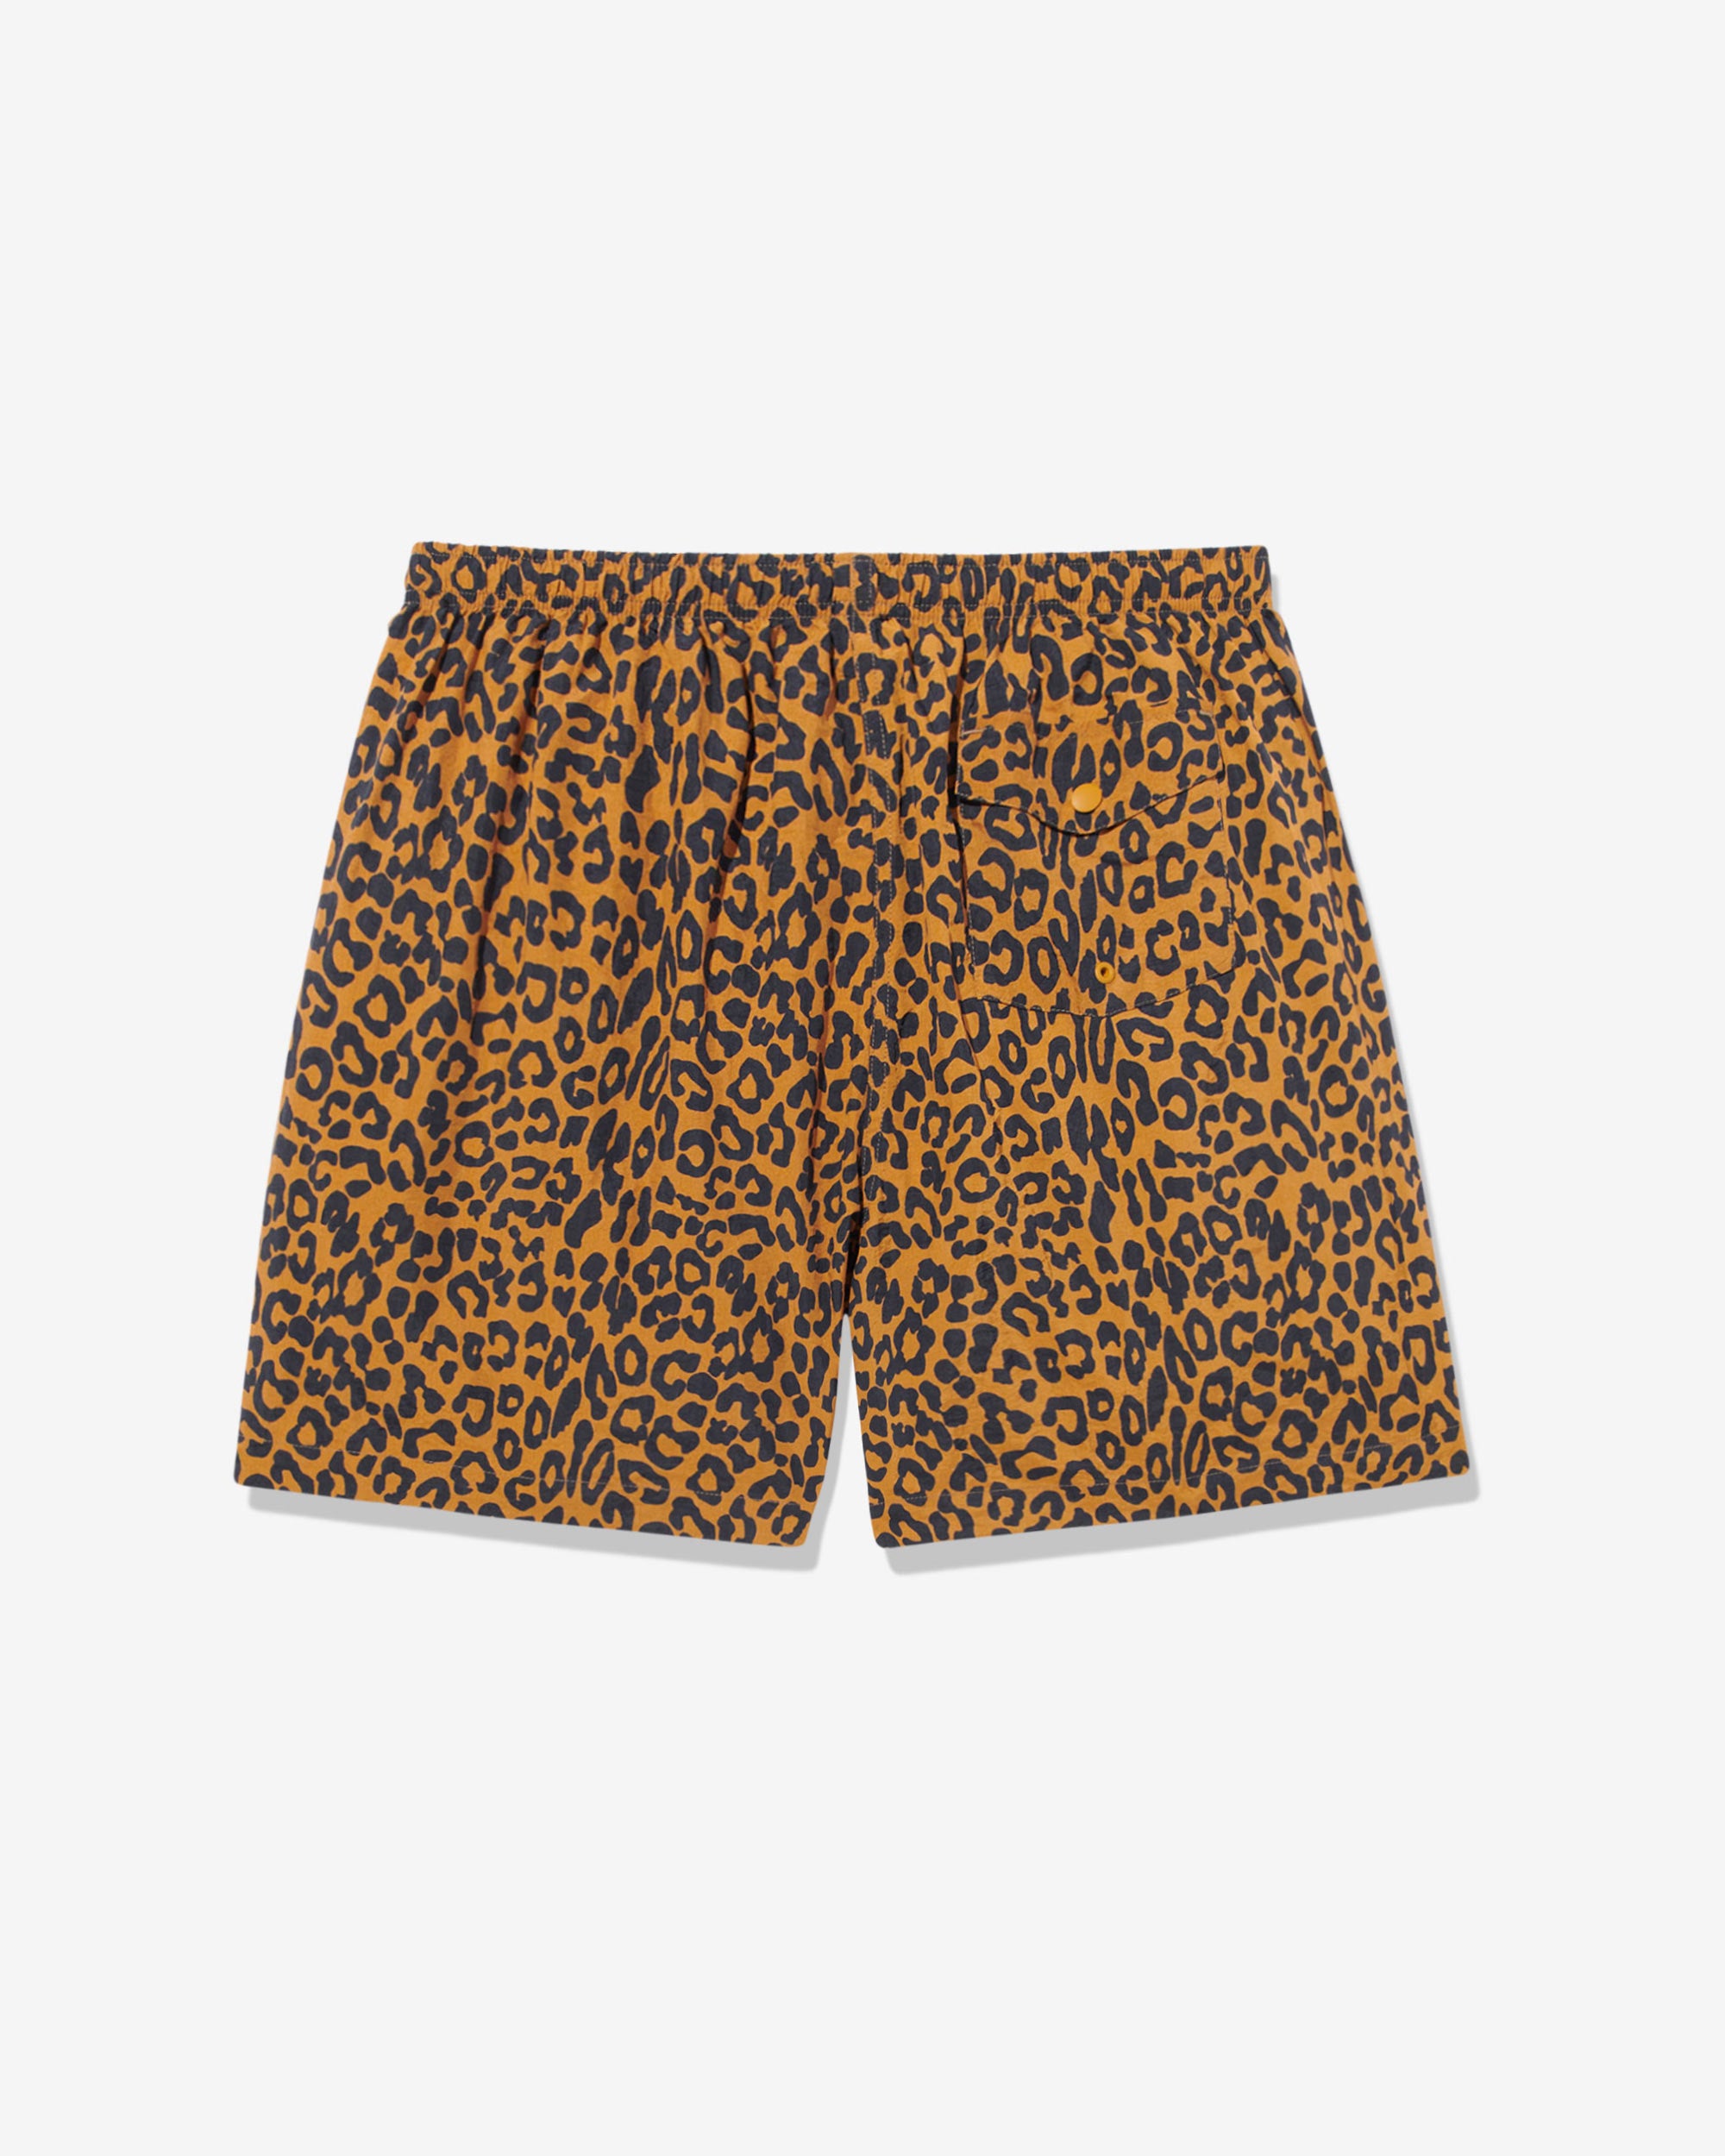 Leopard Swim Trunks - Noah